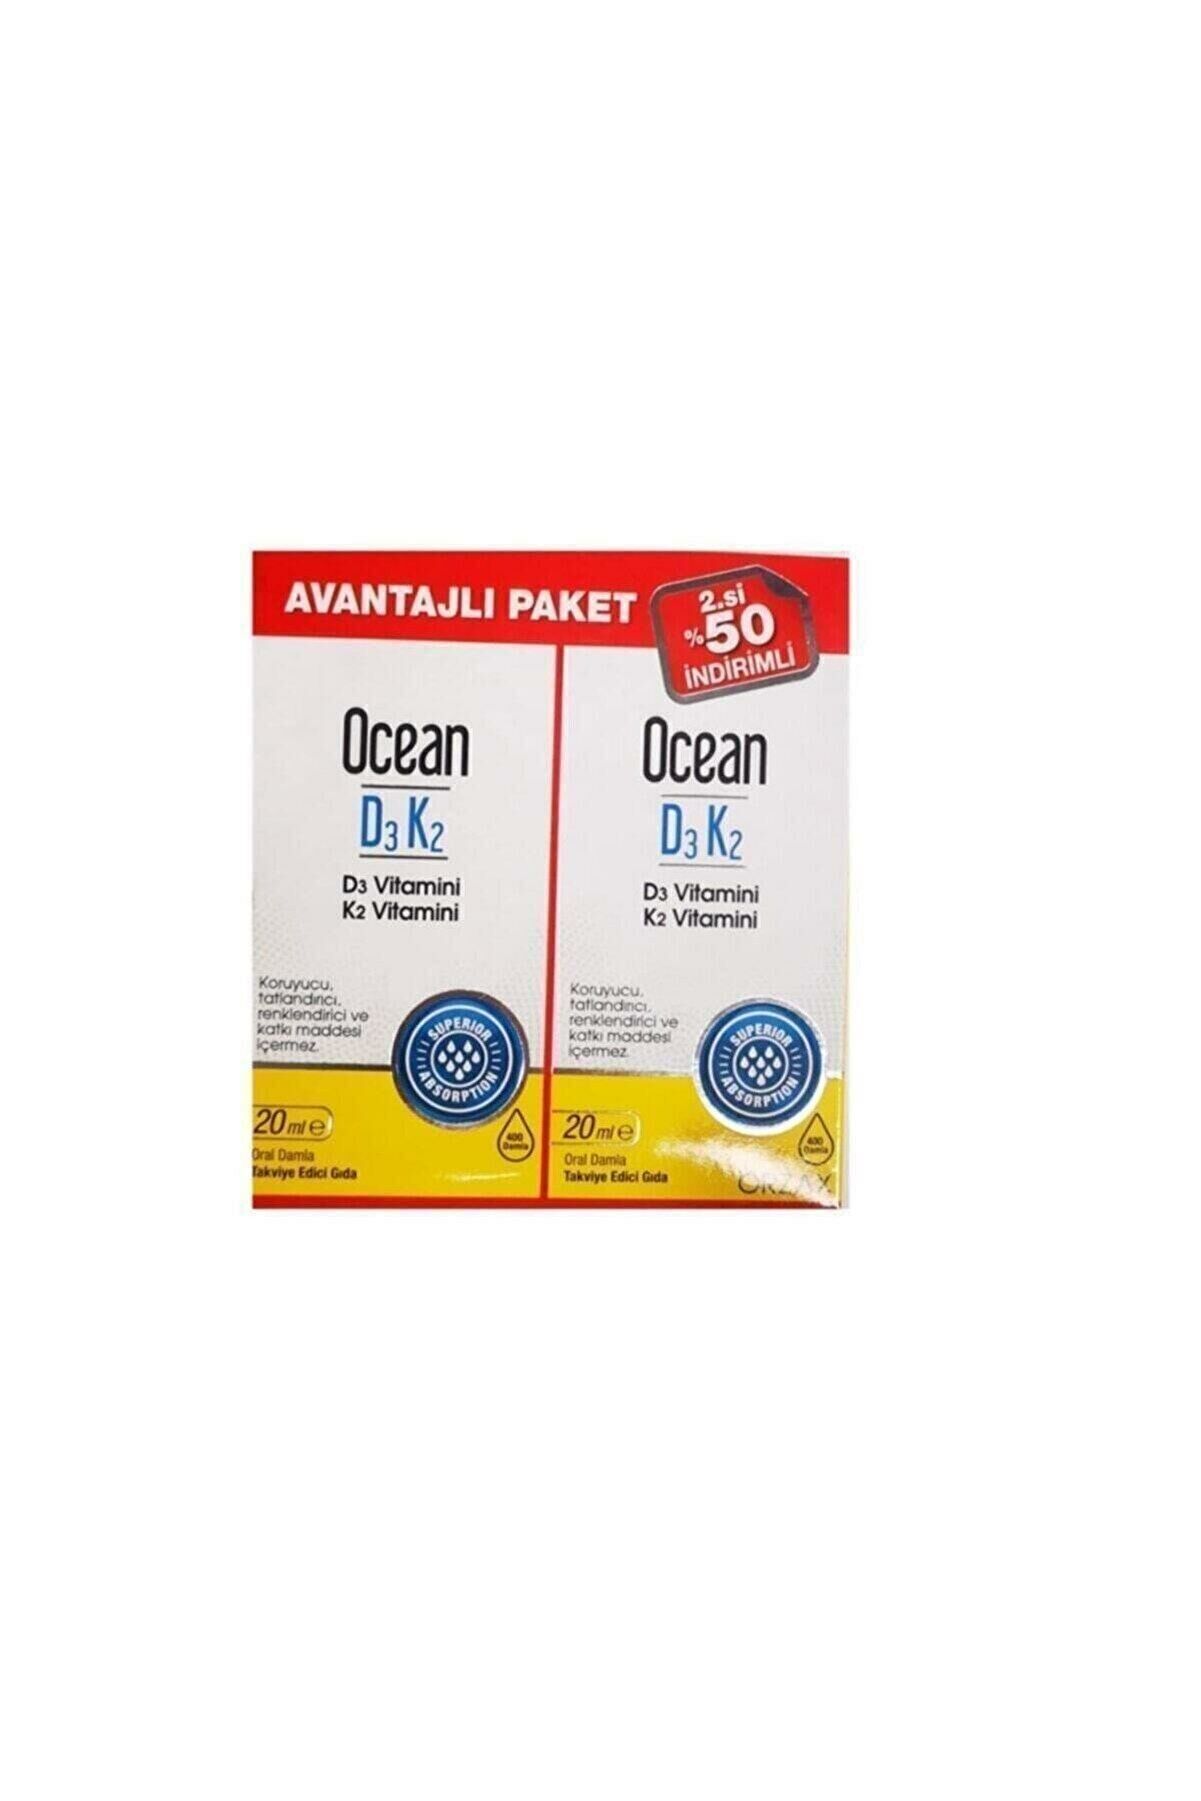 Orzax Ocean D3 K2 20 ml Takviye Edici Gıda Avantajlı Paket